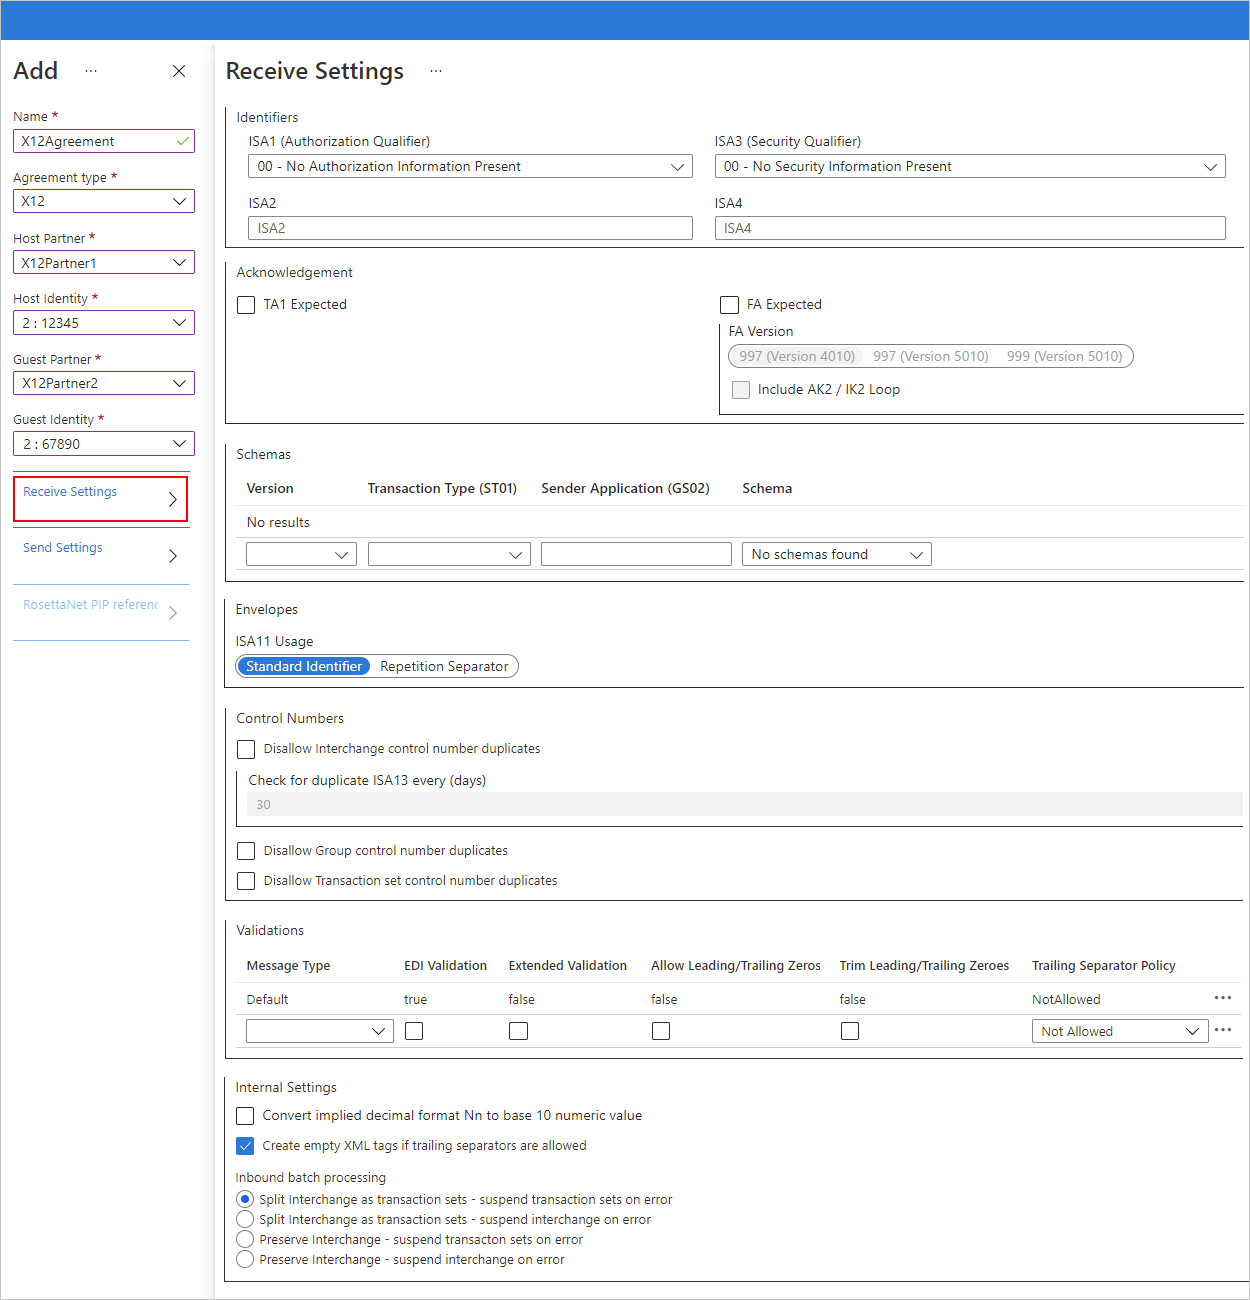 Снимок экрана: параметры соглашения портал Azure и X12 для входящих сообщений.